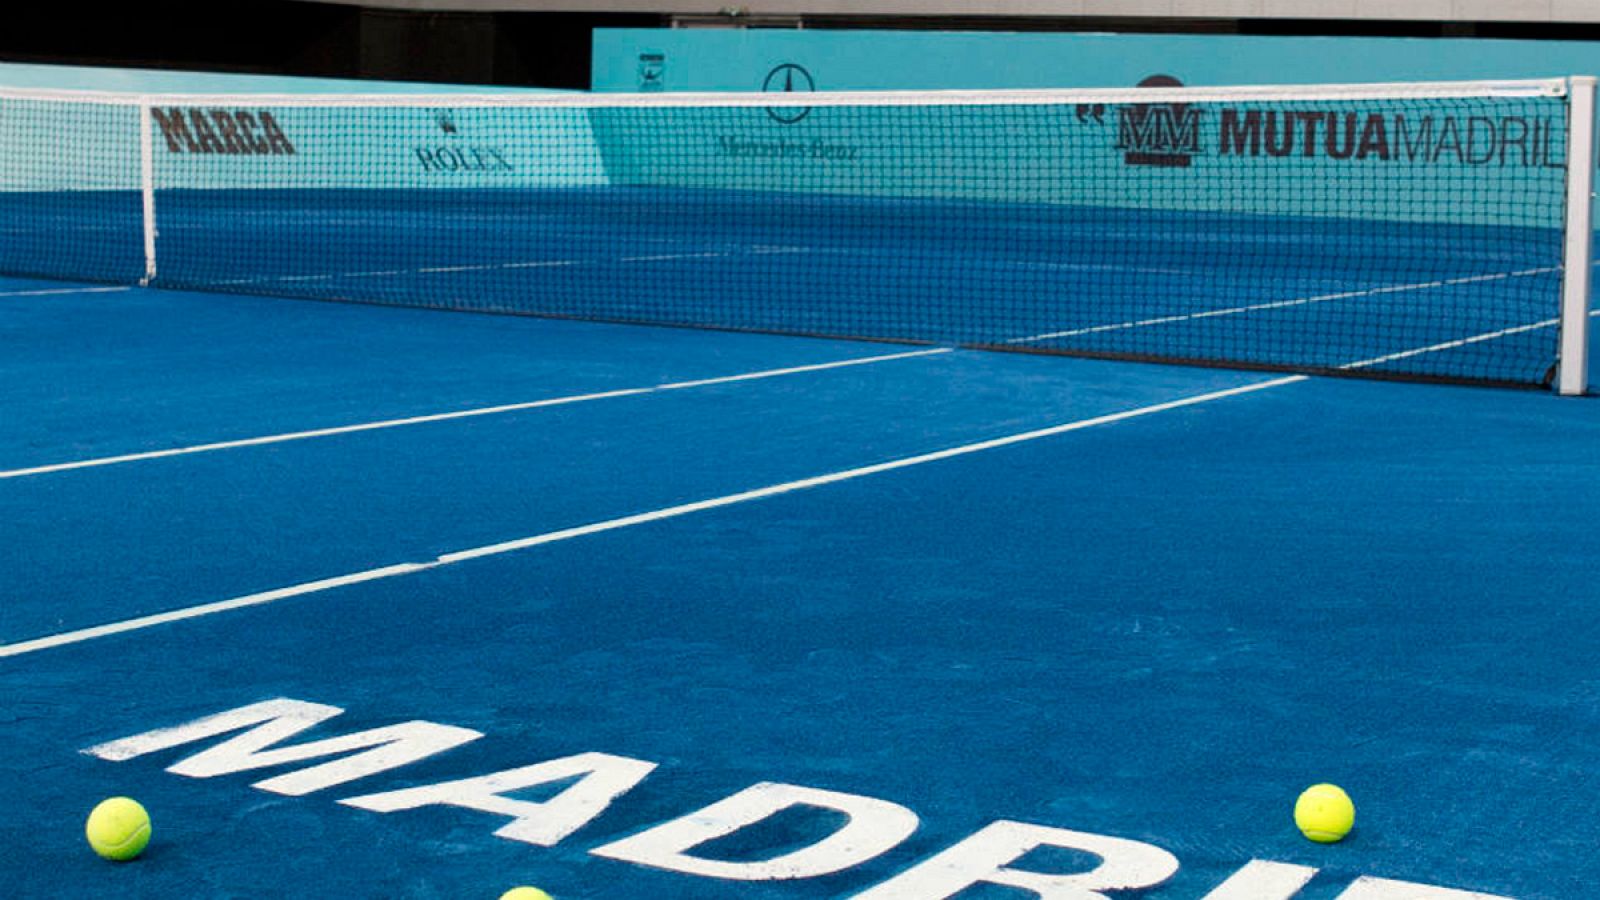 Durante años, la arcilla azul ha caracterizado al Open de tenis que acoge Madrid en mayo